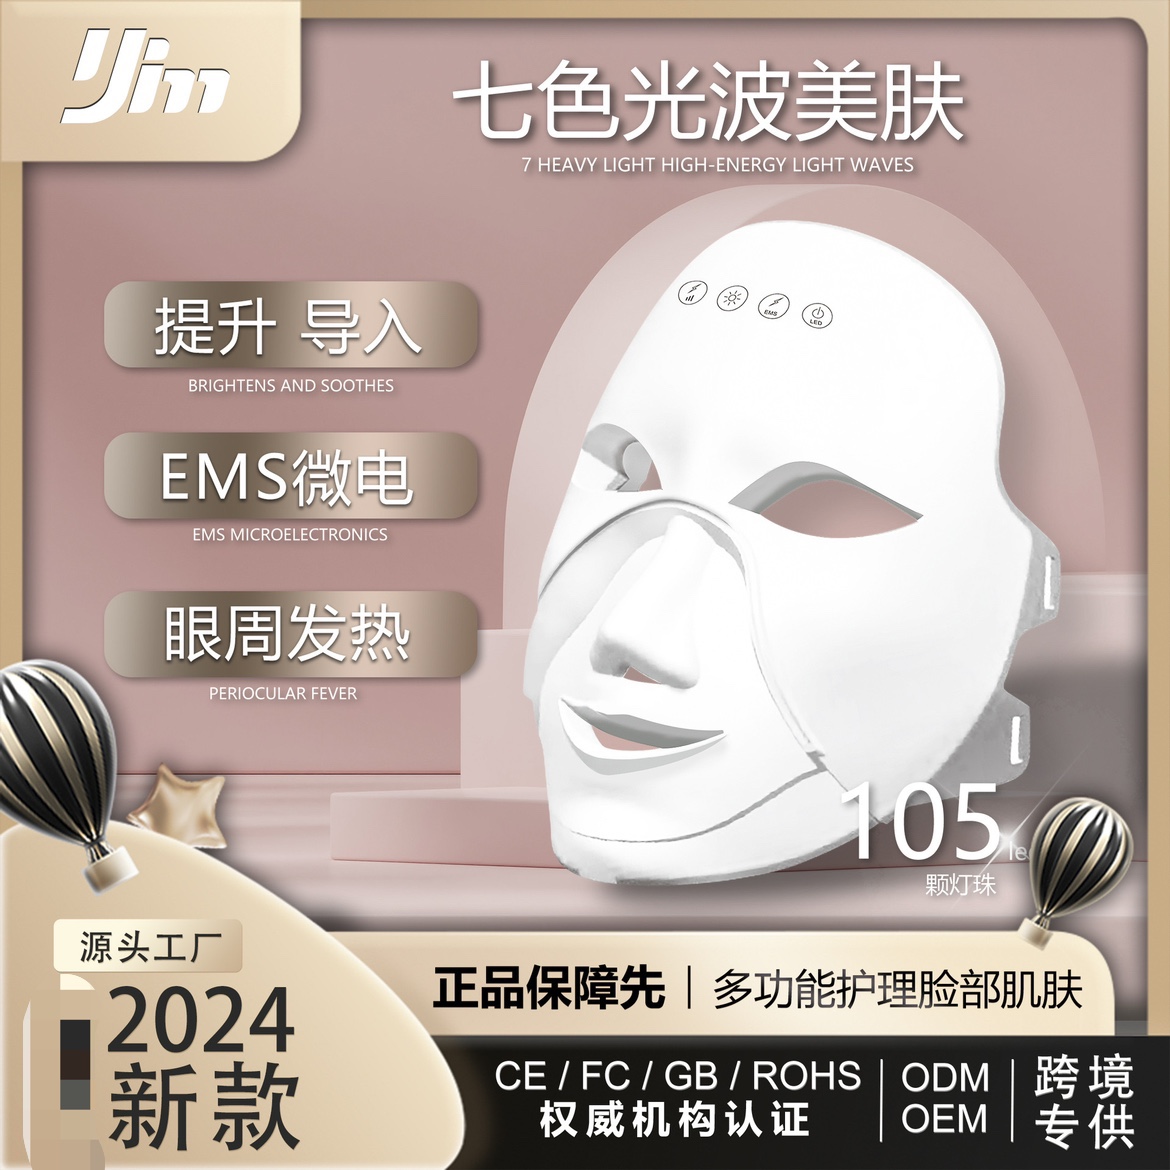 新品美容面罩LED彩光脸部美白家用紧致加热EMS微电光子嫩肤导入仪